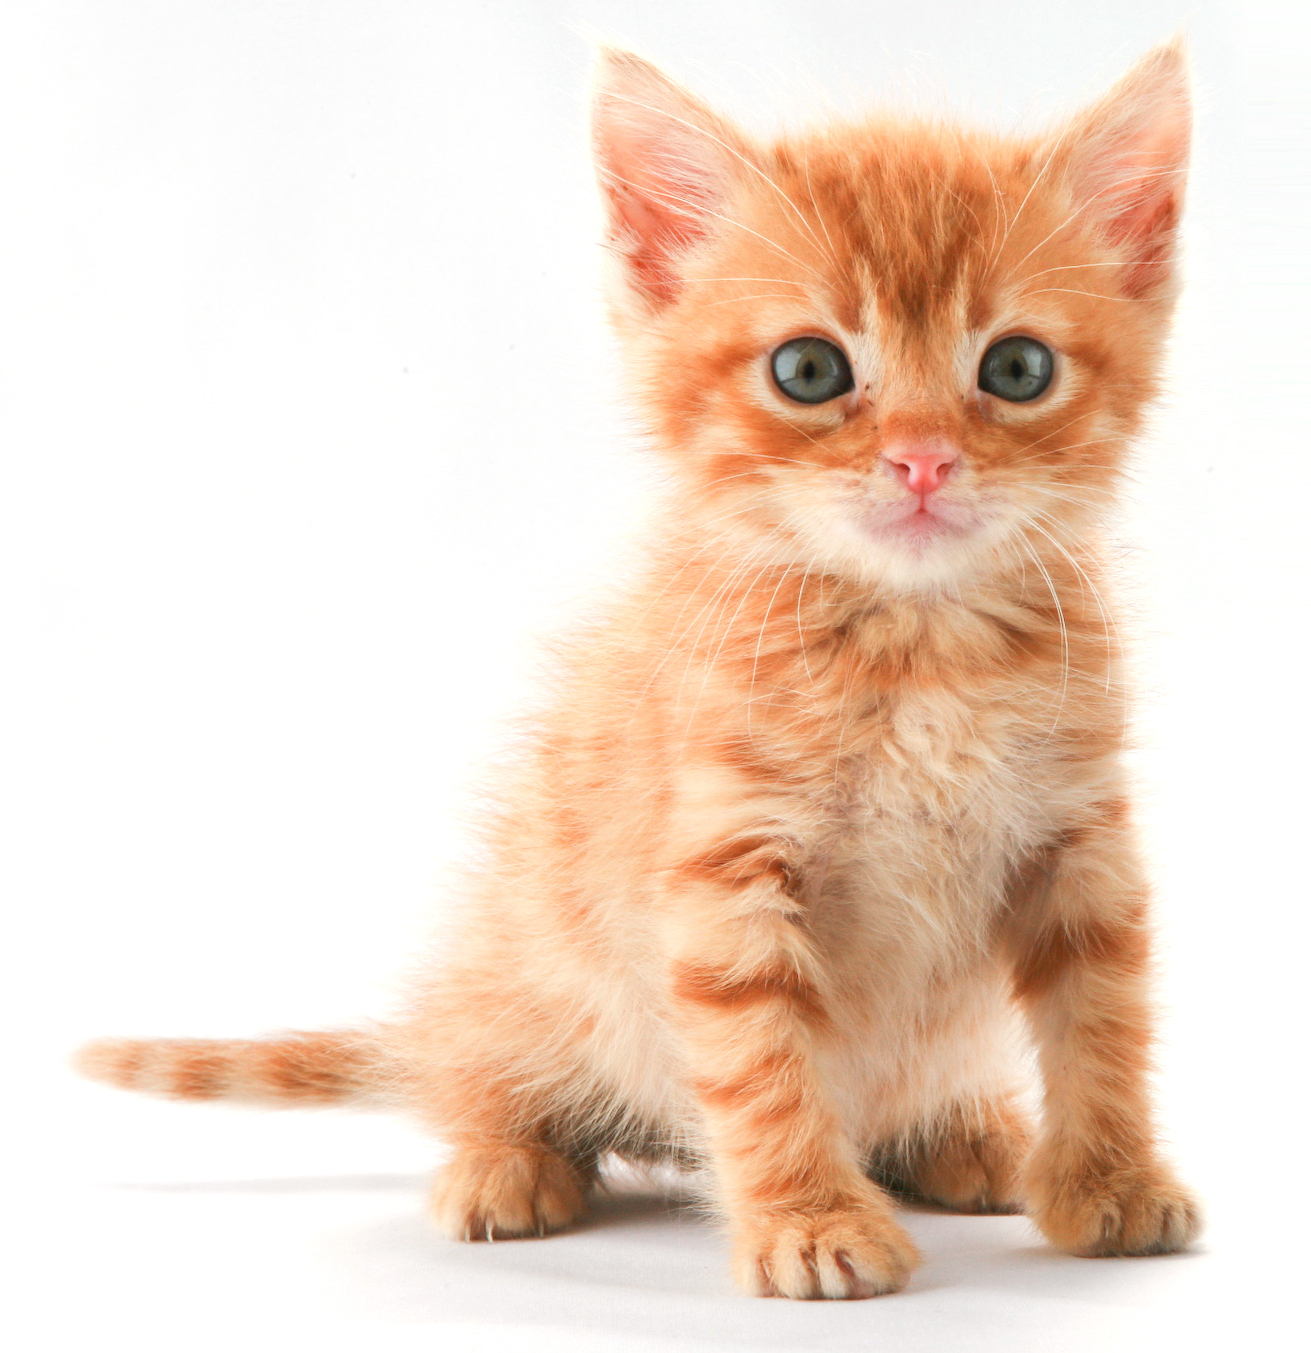 A cute ginger kitten